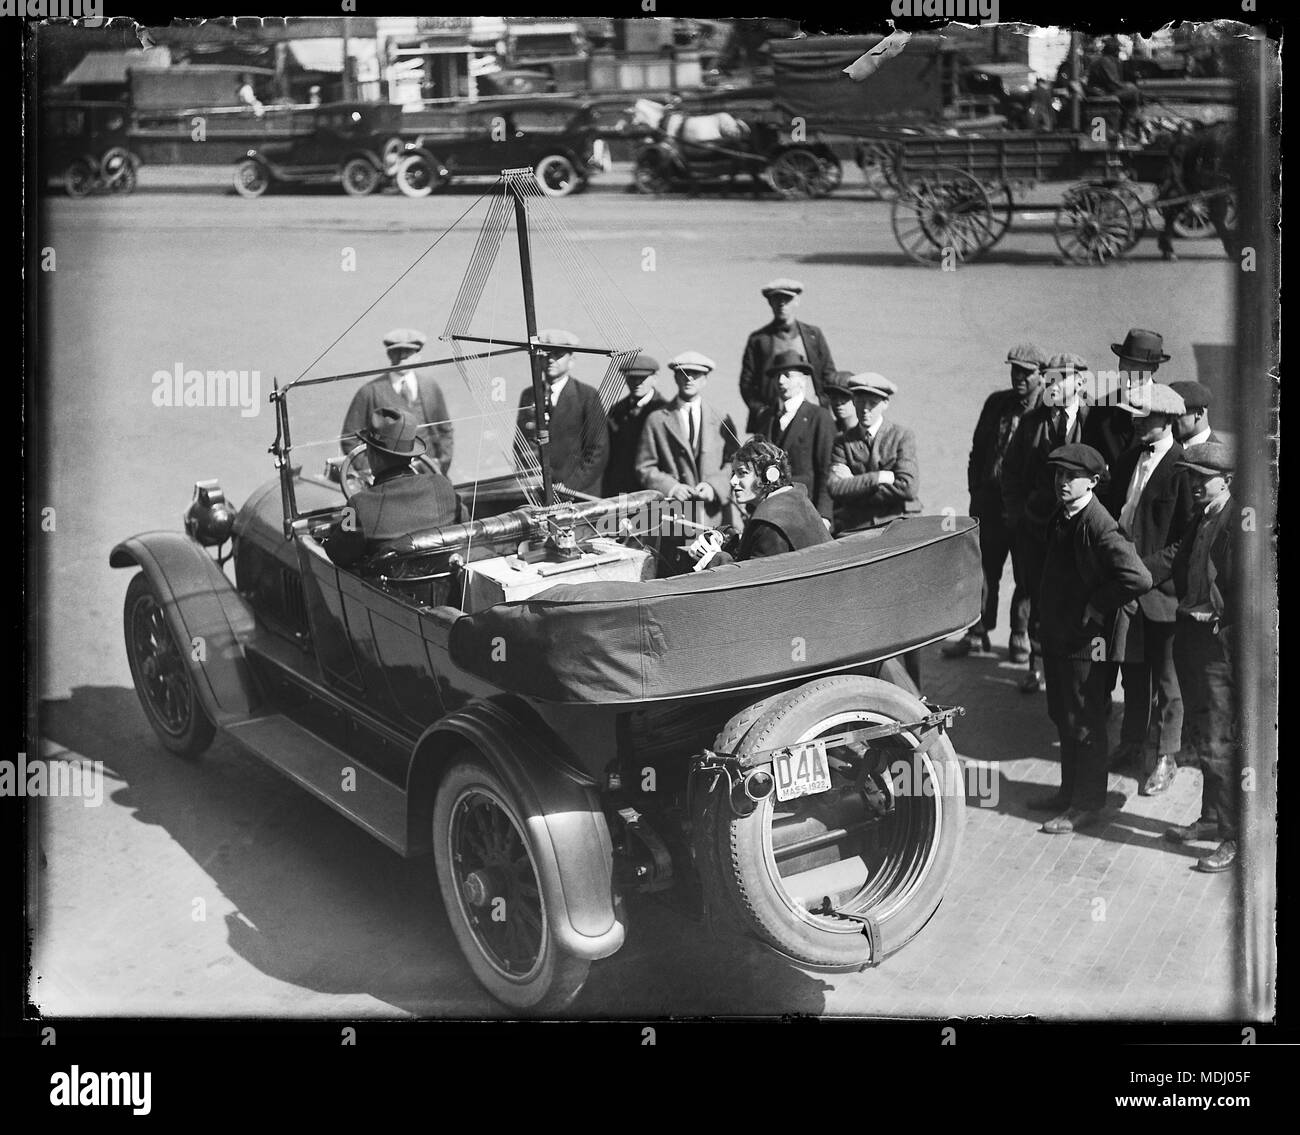 Auto mit Radio und Antenne auf den Straßen von Boston, Massachusetts, 1922. Bild von 4x5 Zoll Glas negativ. Stockfoto